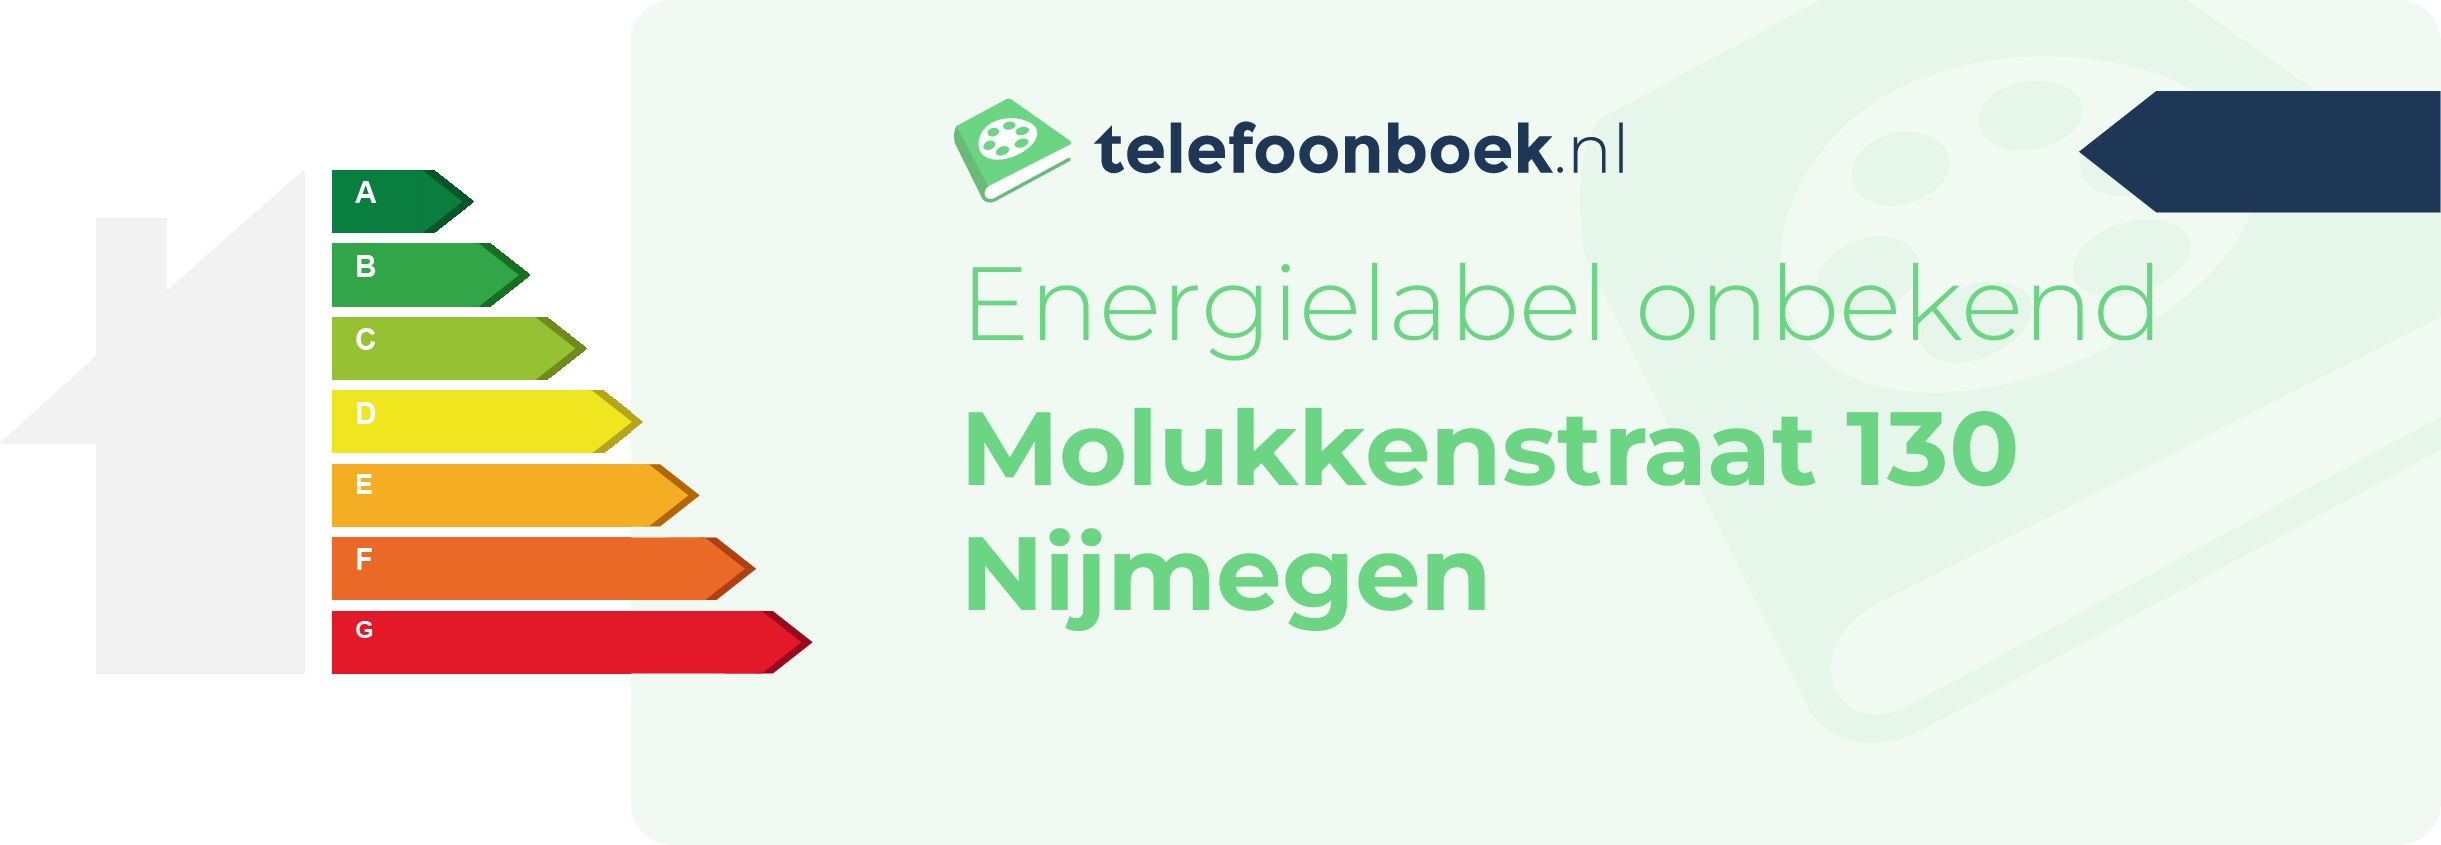 Energielabel Molukkenstraat 130 Nijmegen